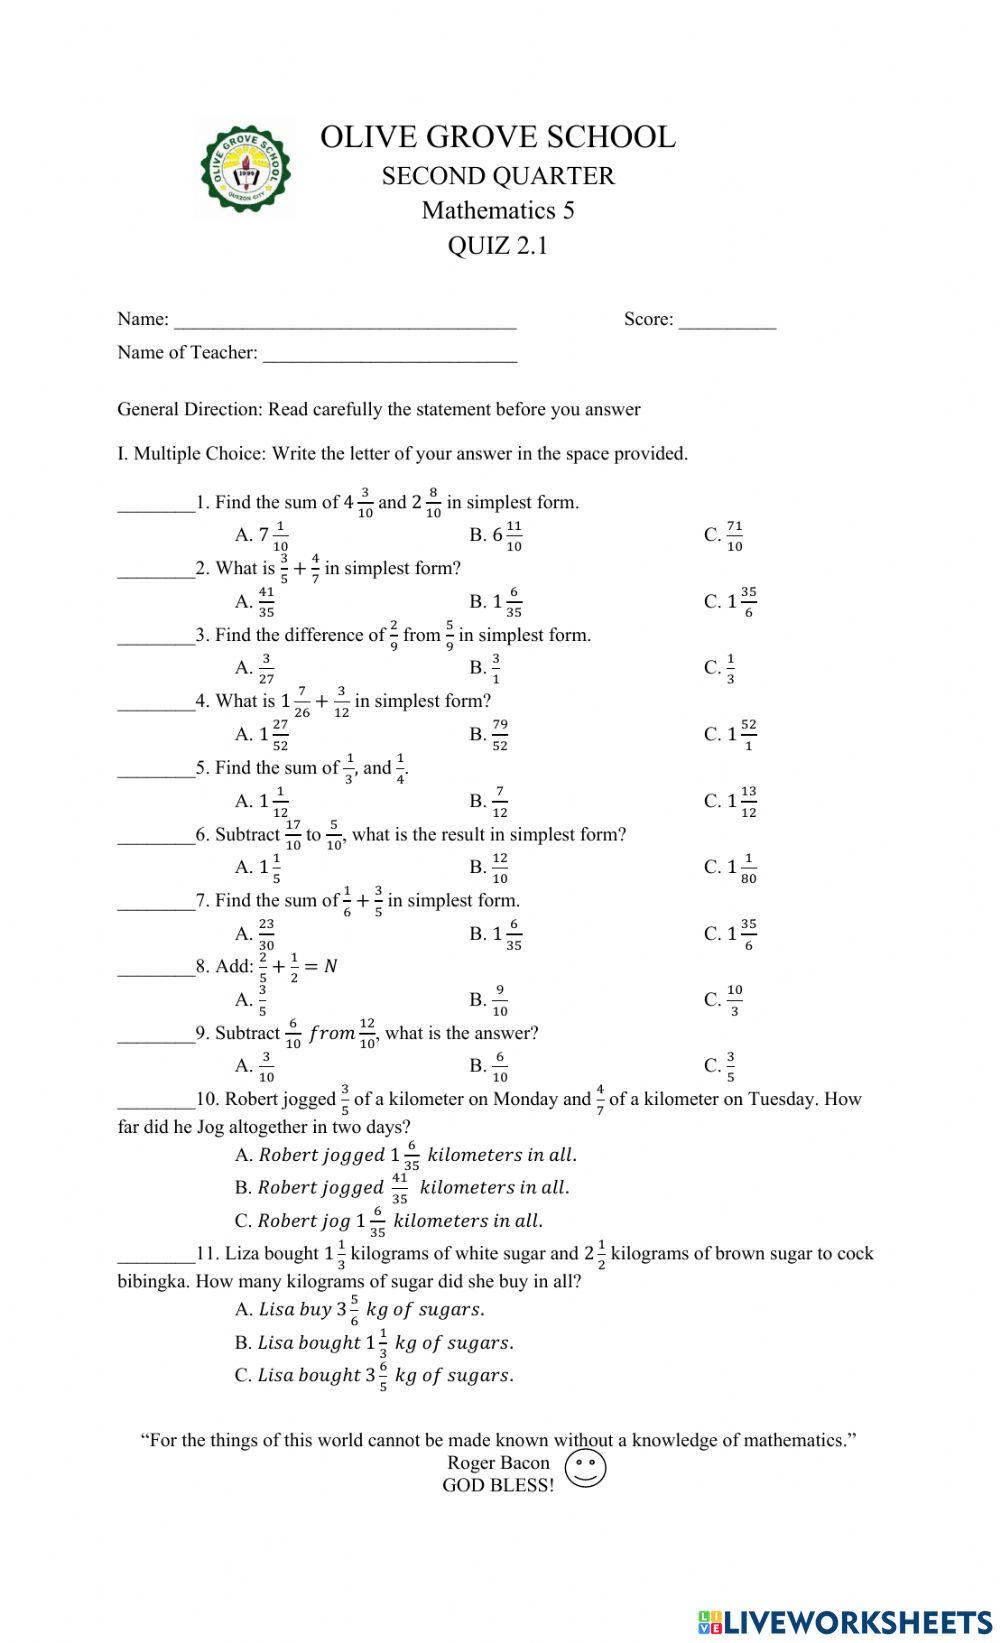 Quiz 2.1 in Mathematics 5